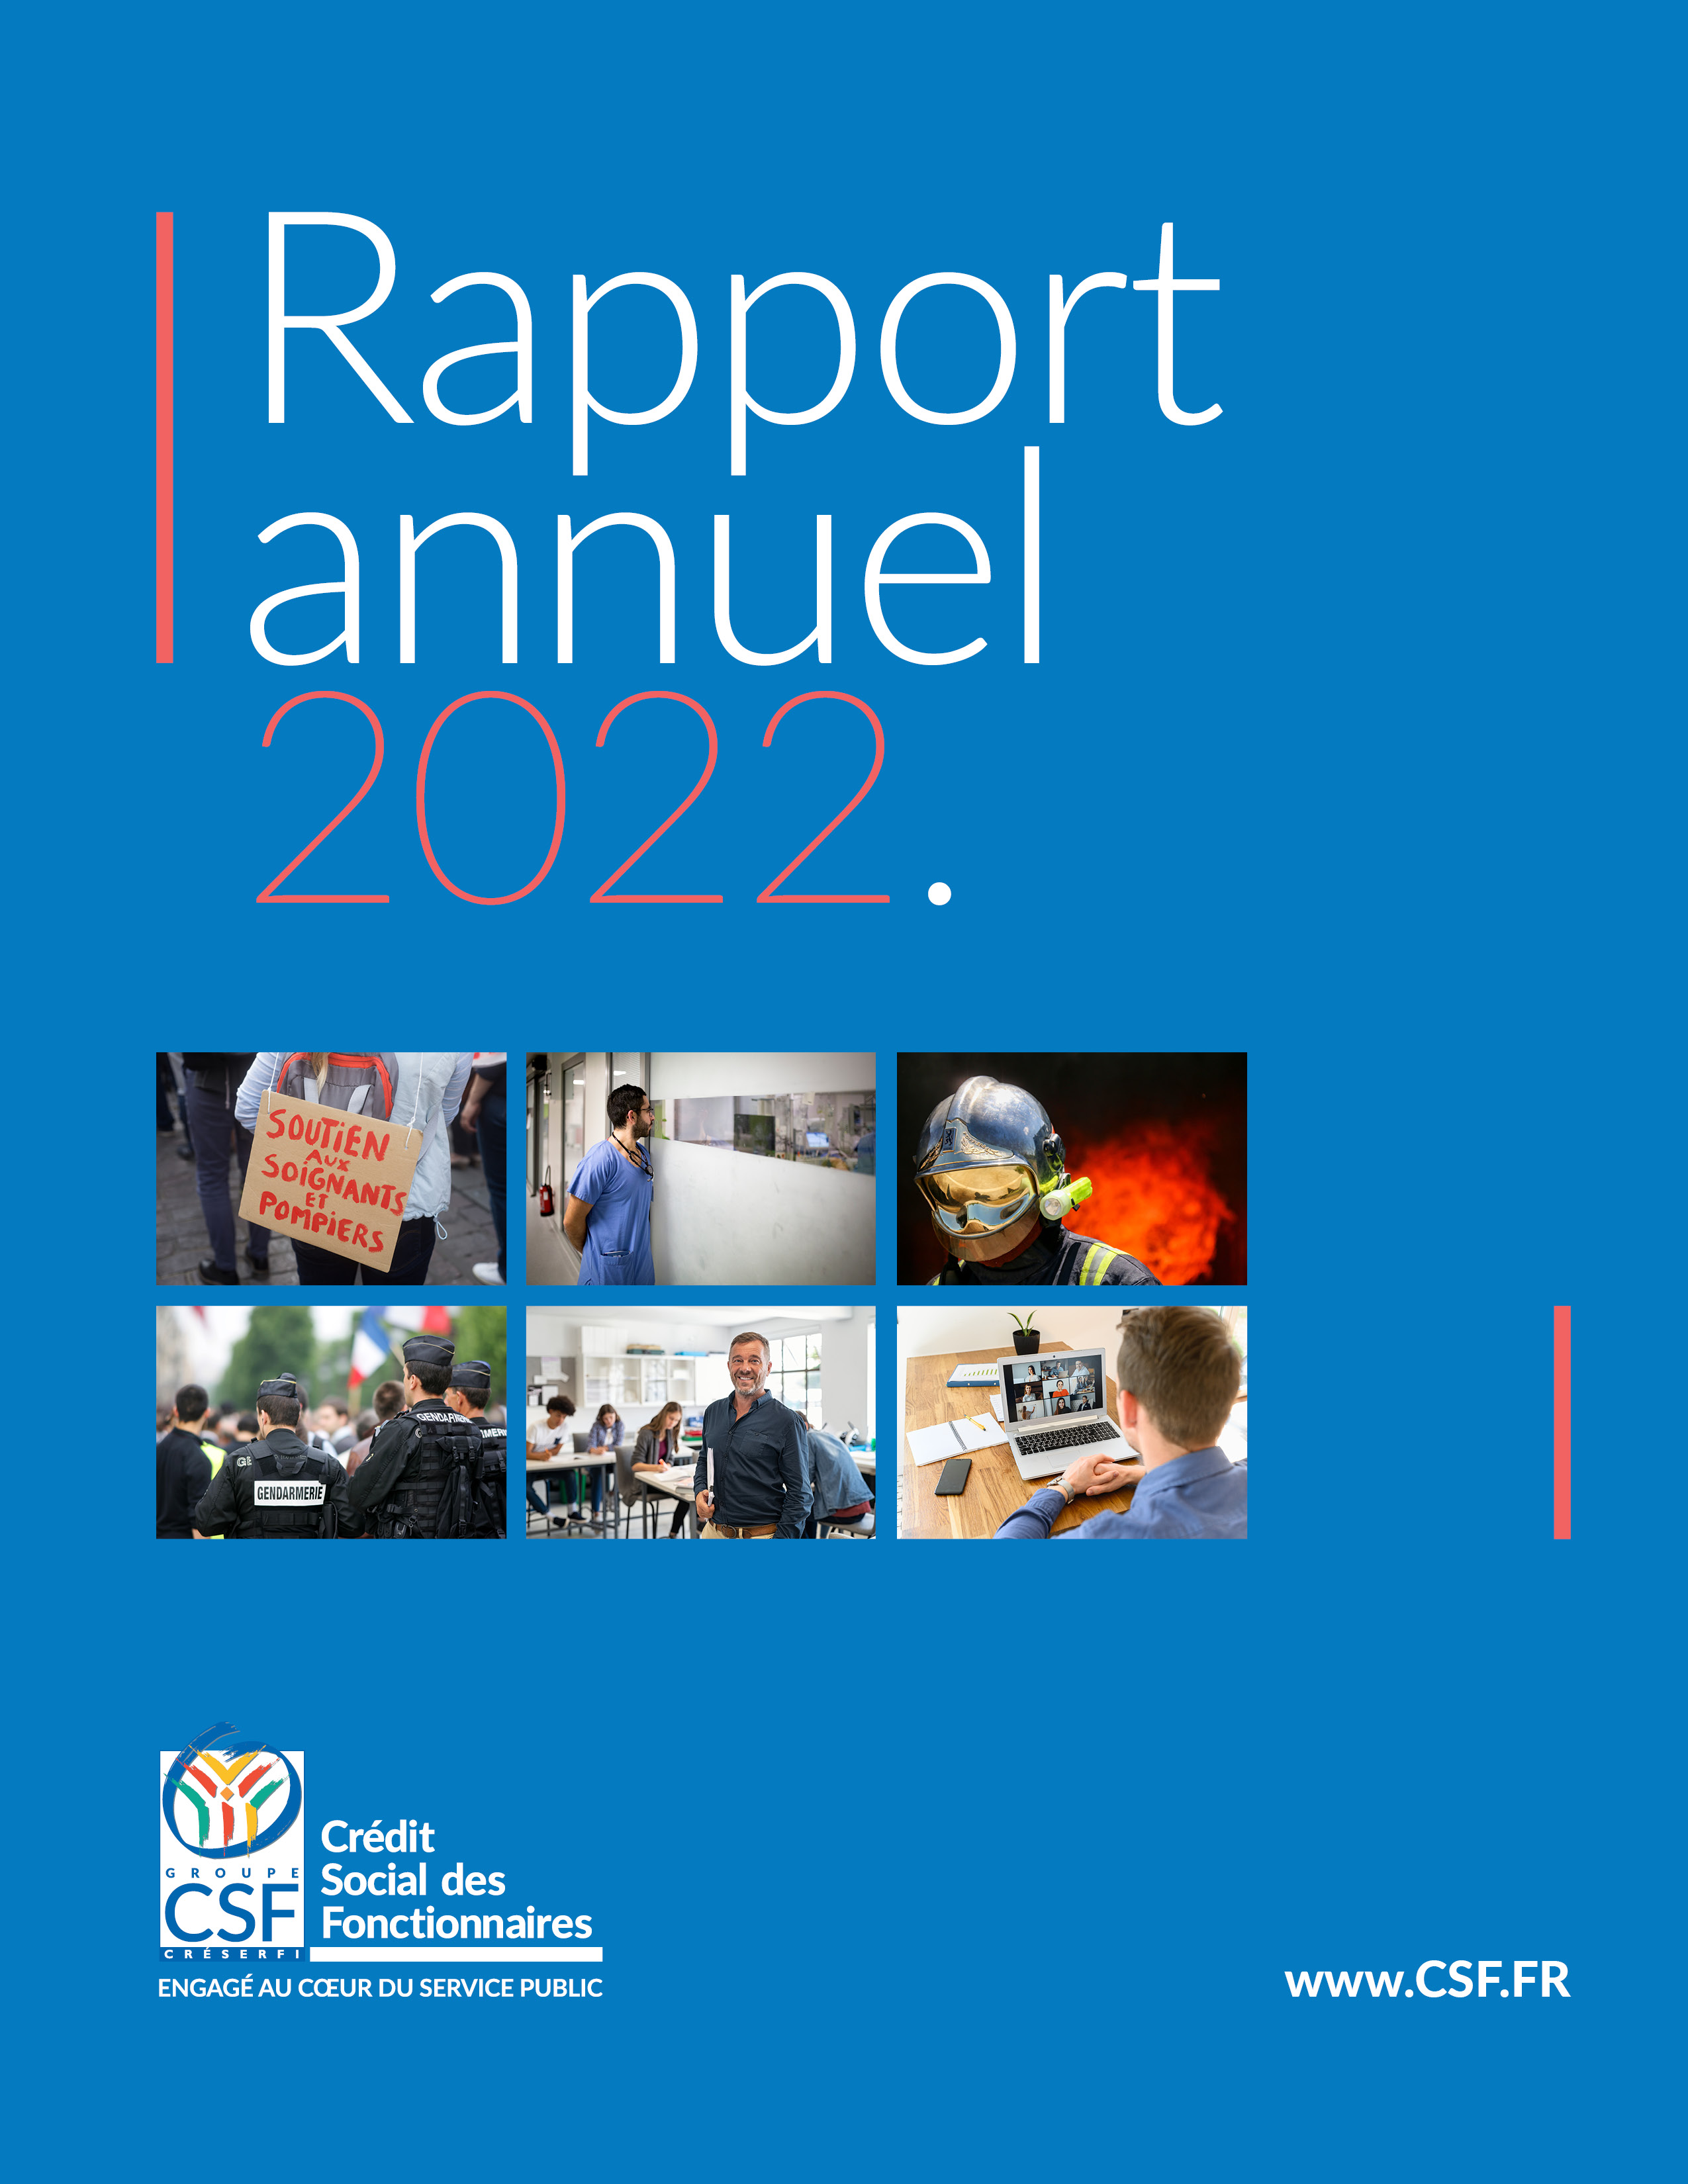 Rapport annuel CSF 2022 : le mot du Président